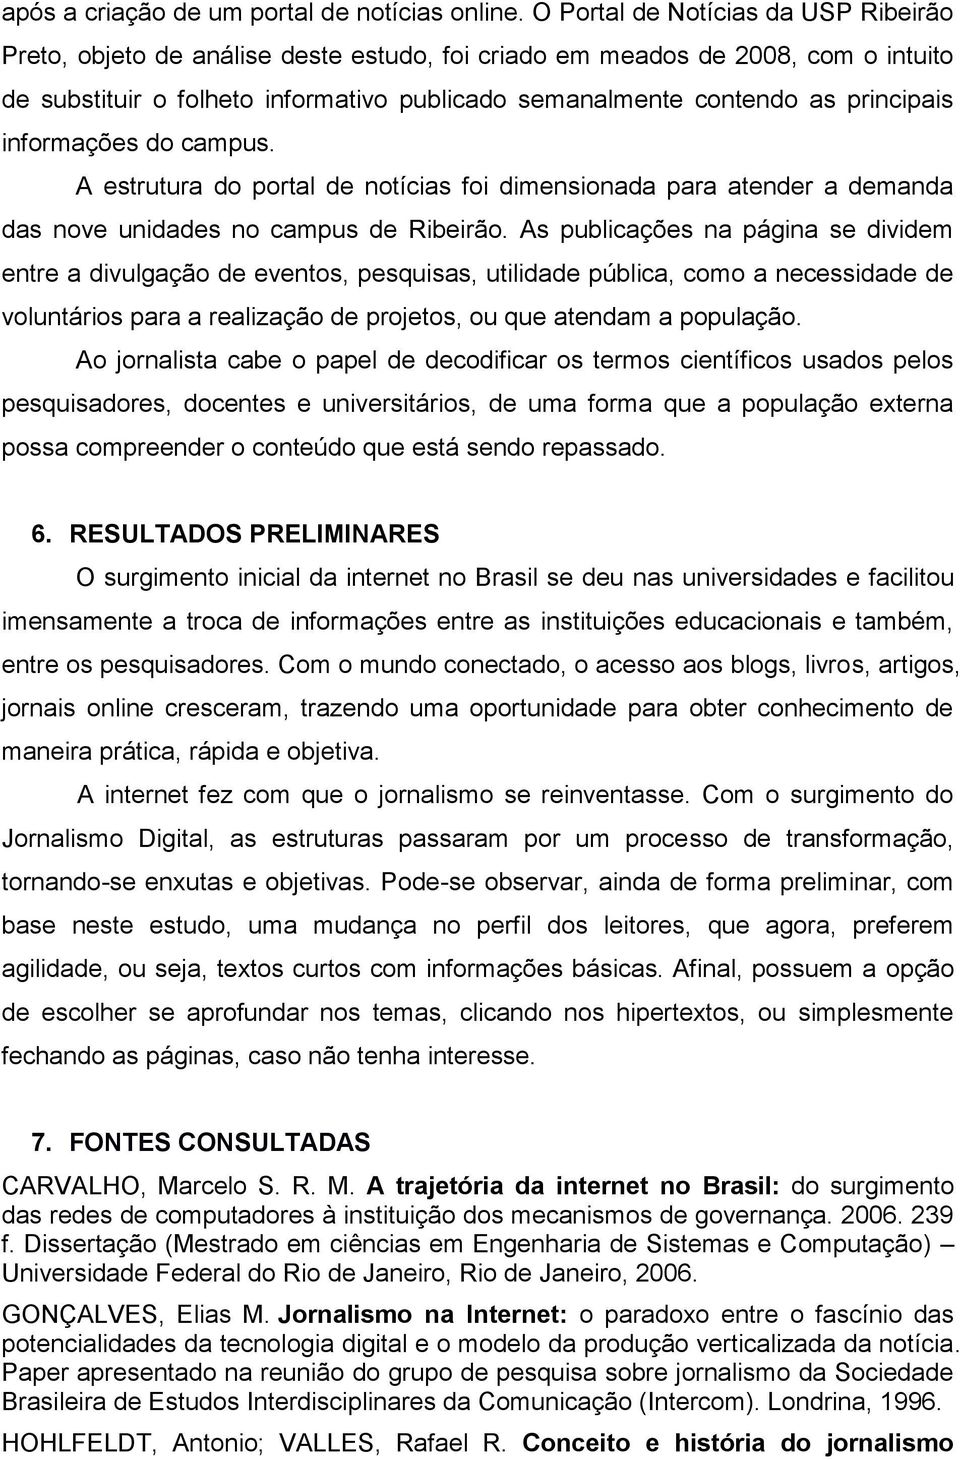 principais informações do campus. A estrutura do portal de notícias foi dimensionada para atender a demanda das nove unidades no campus de Ribeirão.